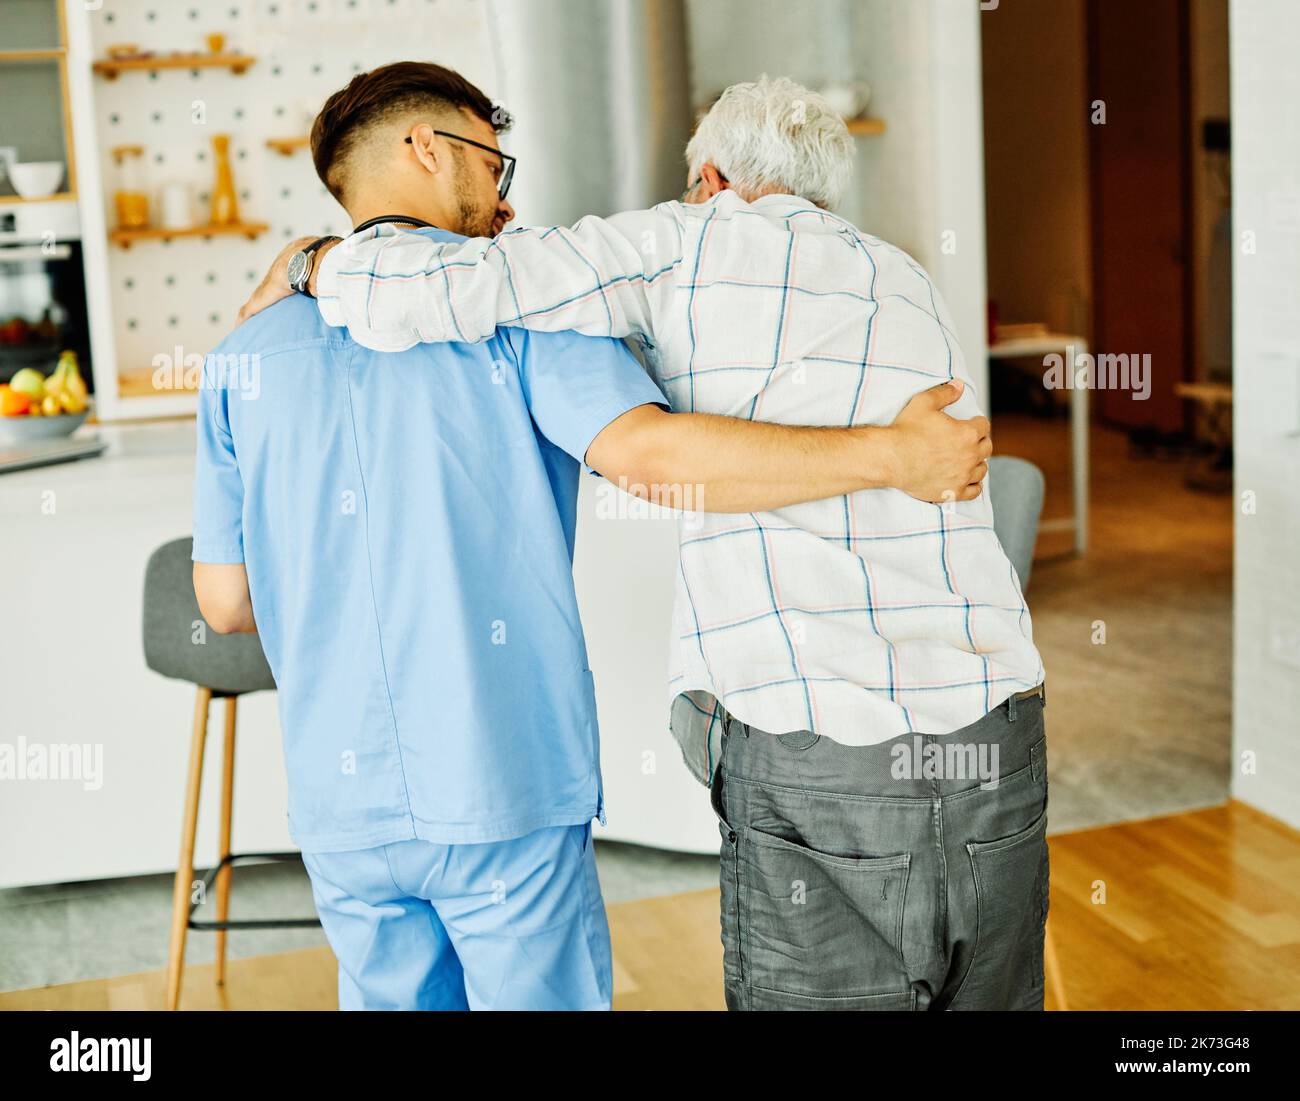 Krankenschwester Arzt Senior Care Betreuer Hilfe Assistierung Ruhestand Heim Krankenpflege helfen halten Umarmung ältere Mann Frau Gesundheit Unterstützung Gehstock Stock Stockfoto